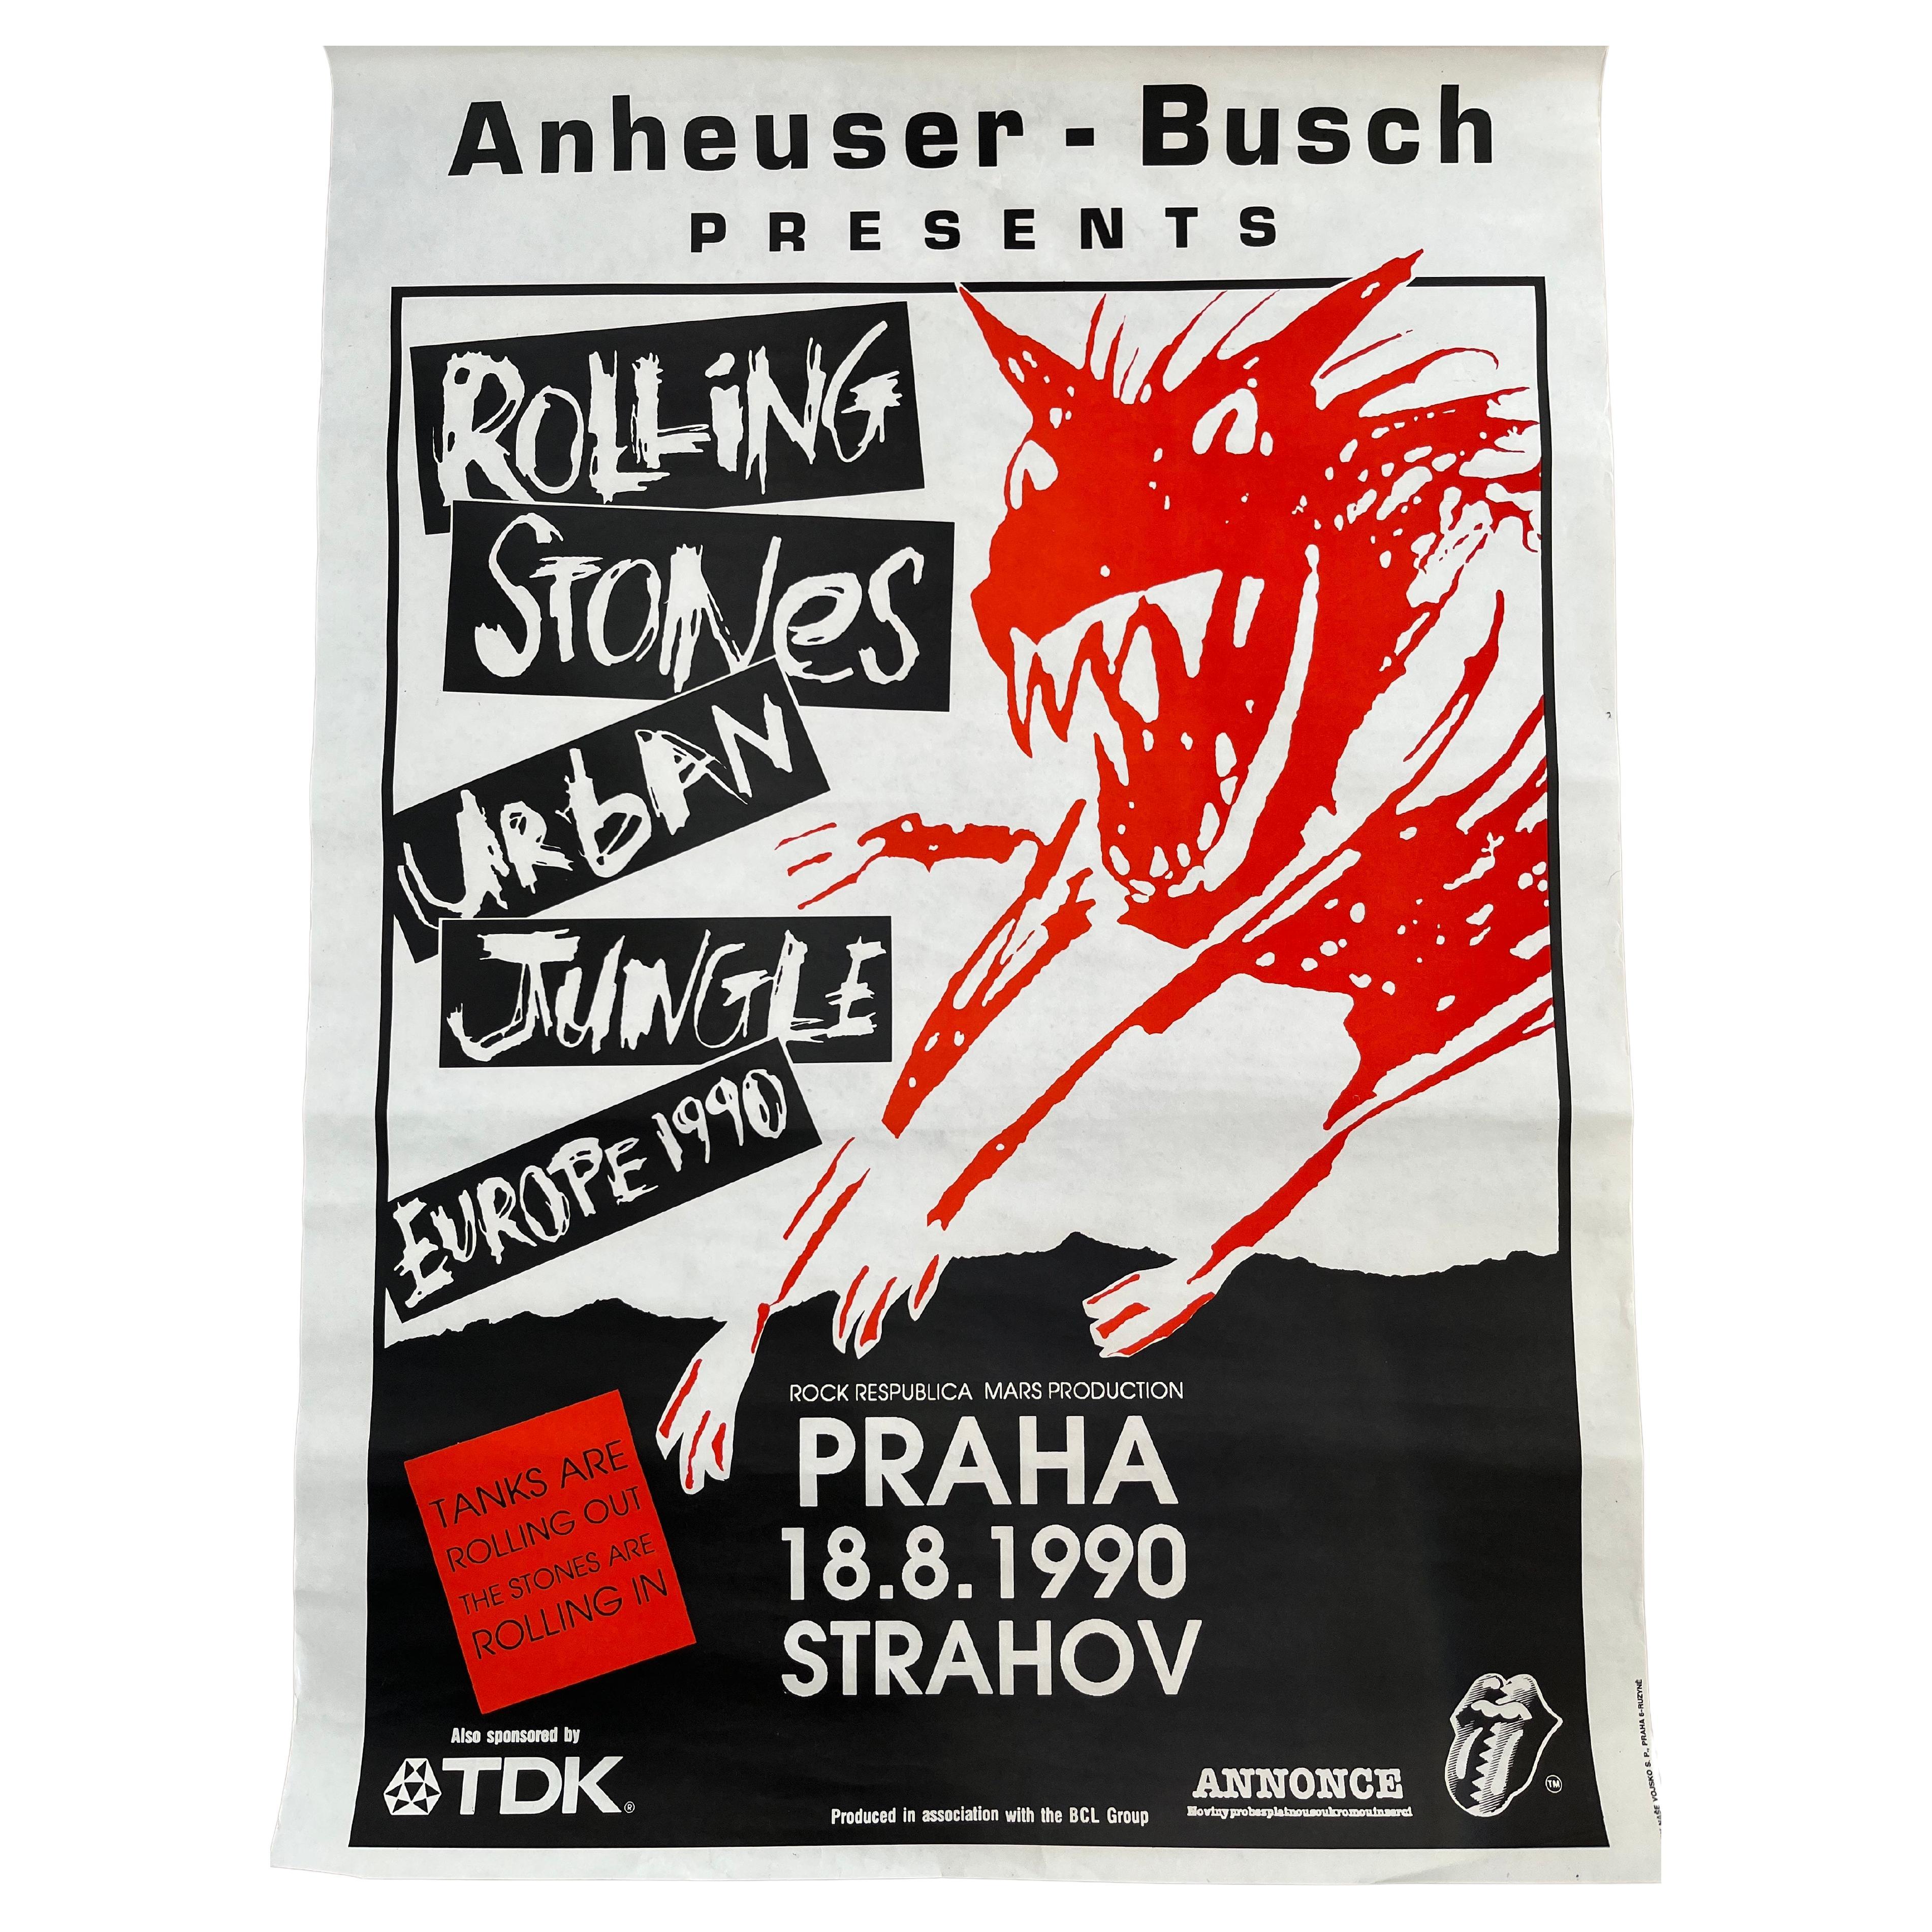 Rare affiche originale de concert design des Rolling Stones, Prague / 1990